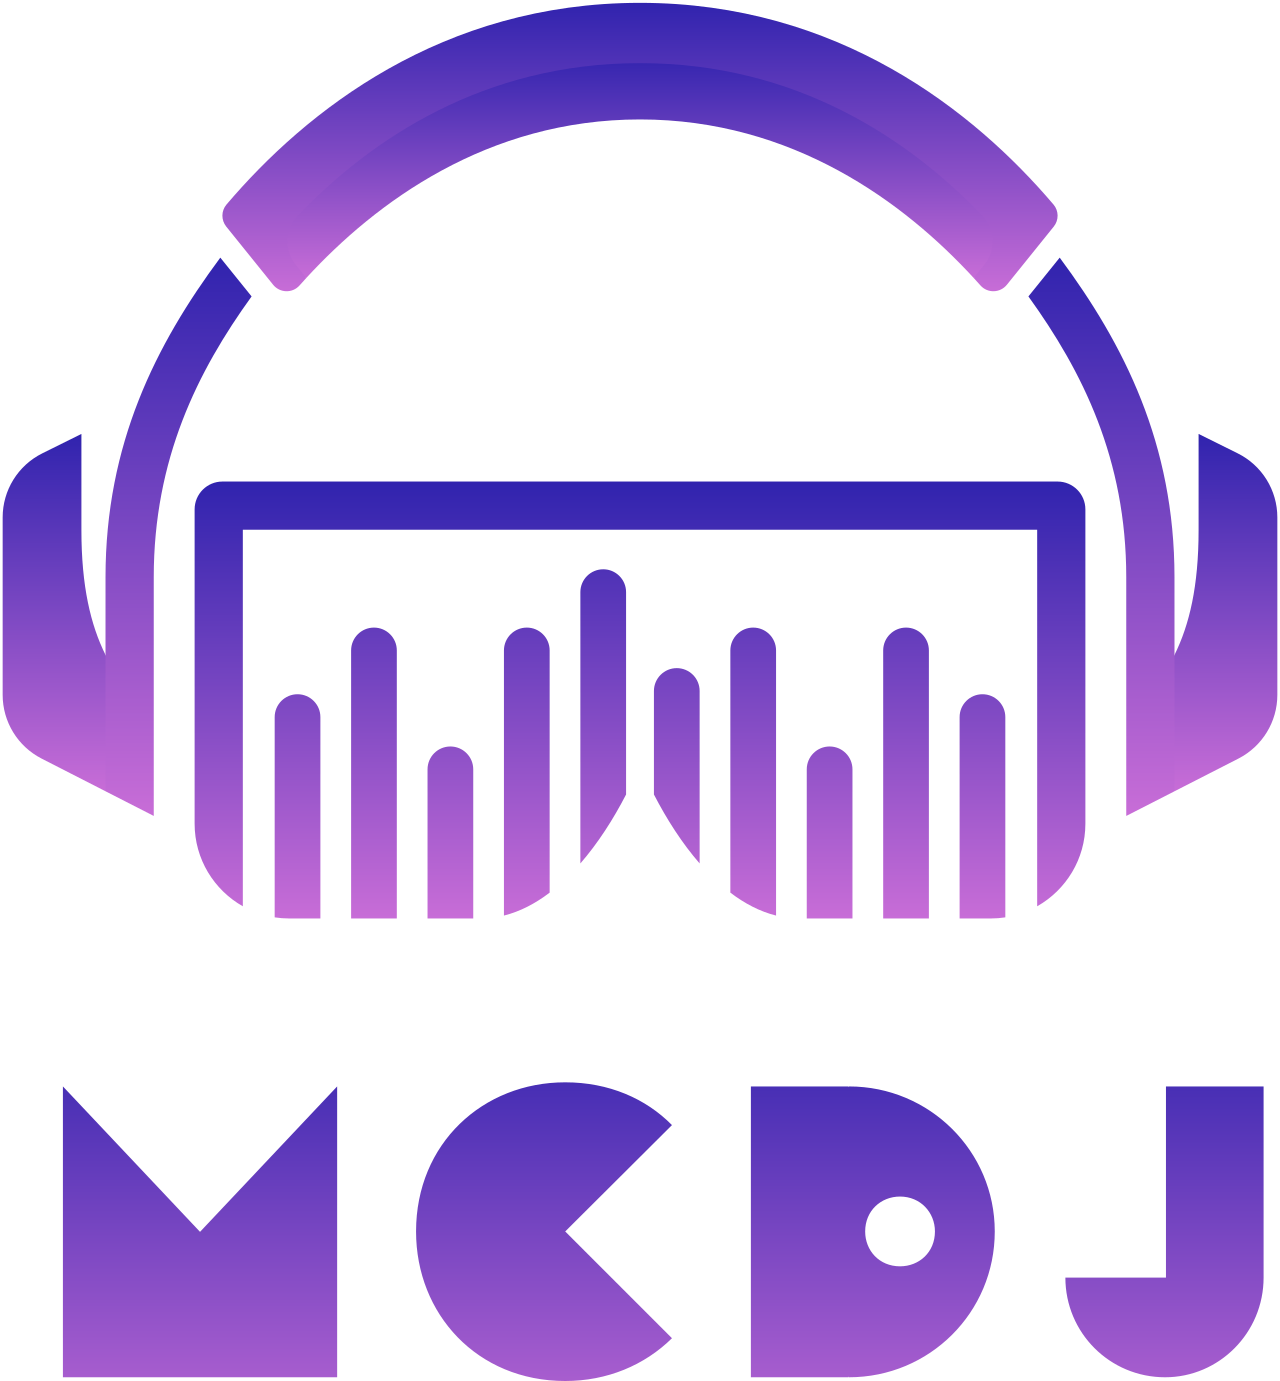 McDj's logo